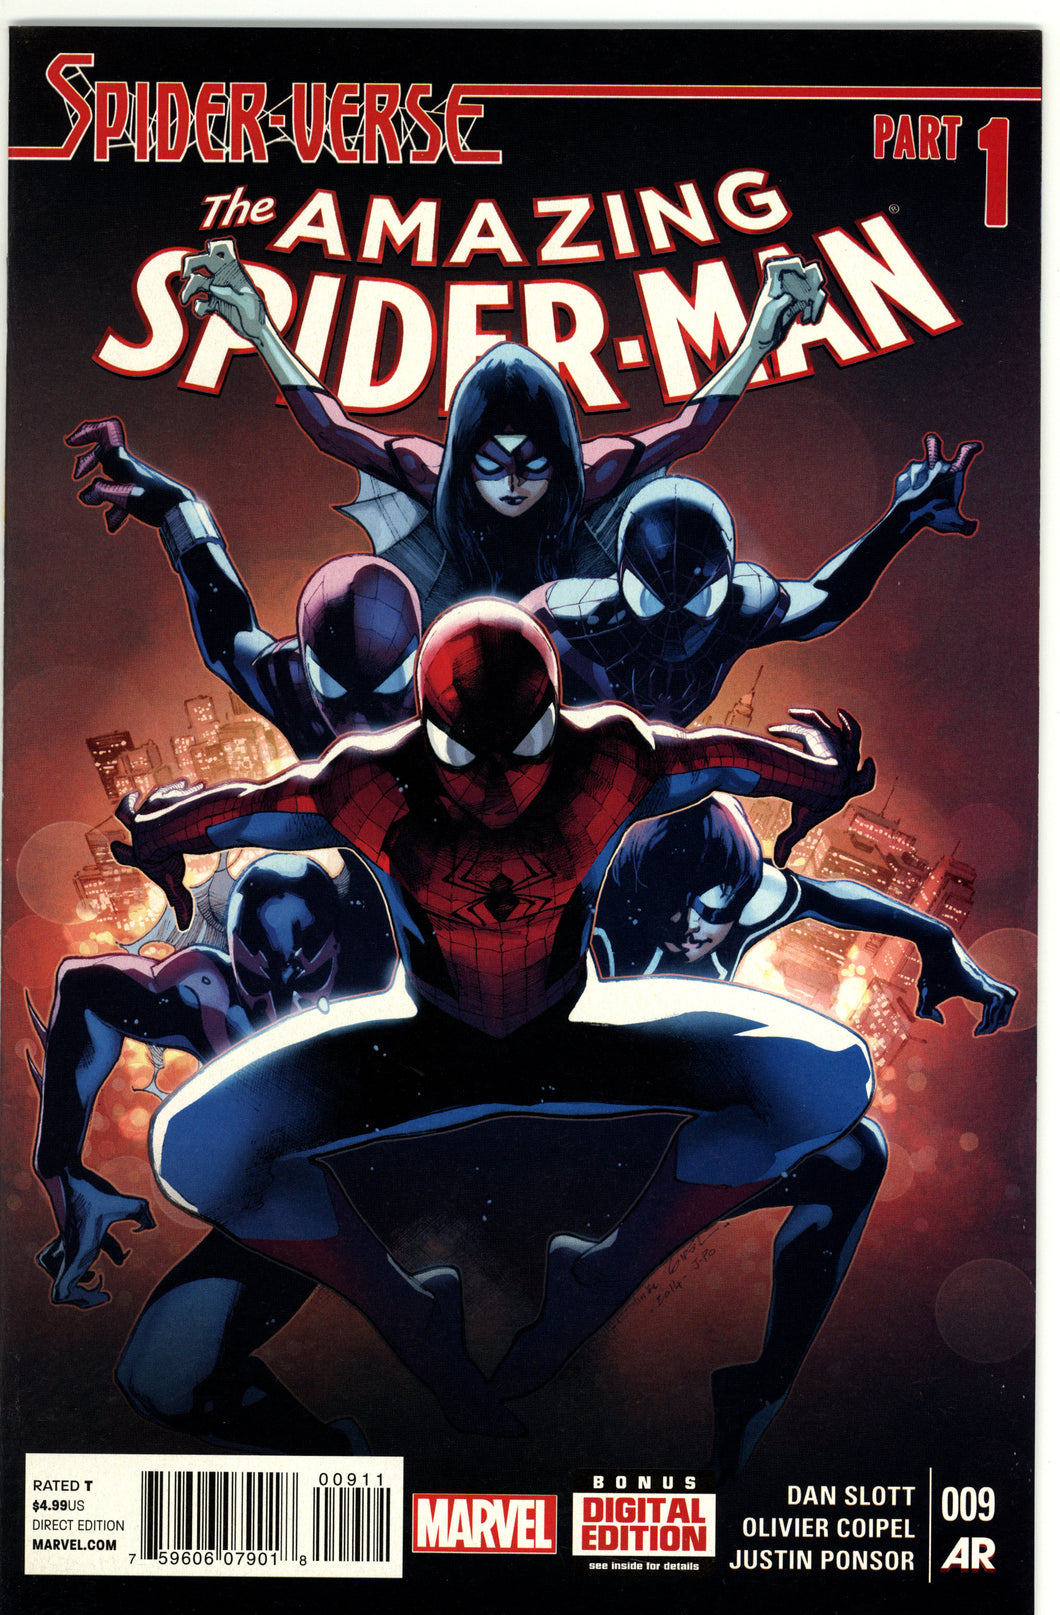 SPIDER-VERSE AMAZING SPIDER-MAN #9-15 COMPLETE SET (MARVEL 2014)